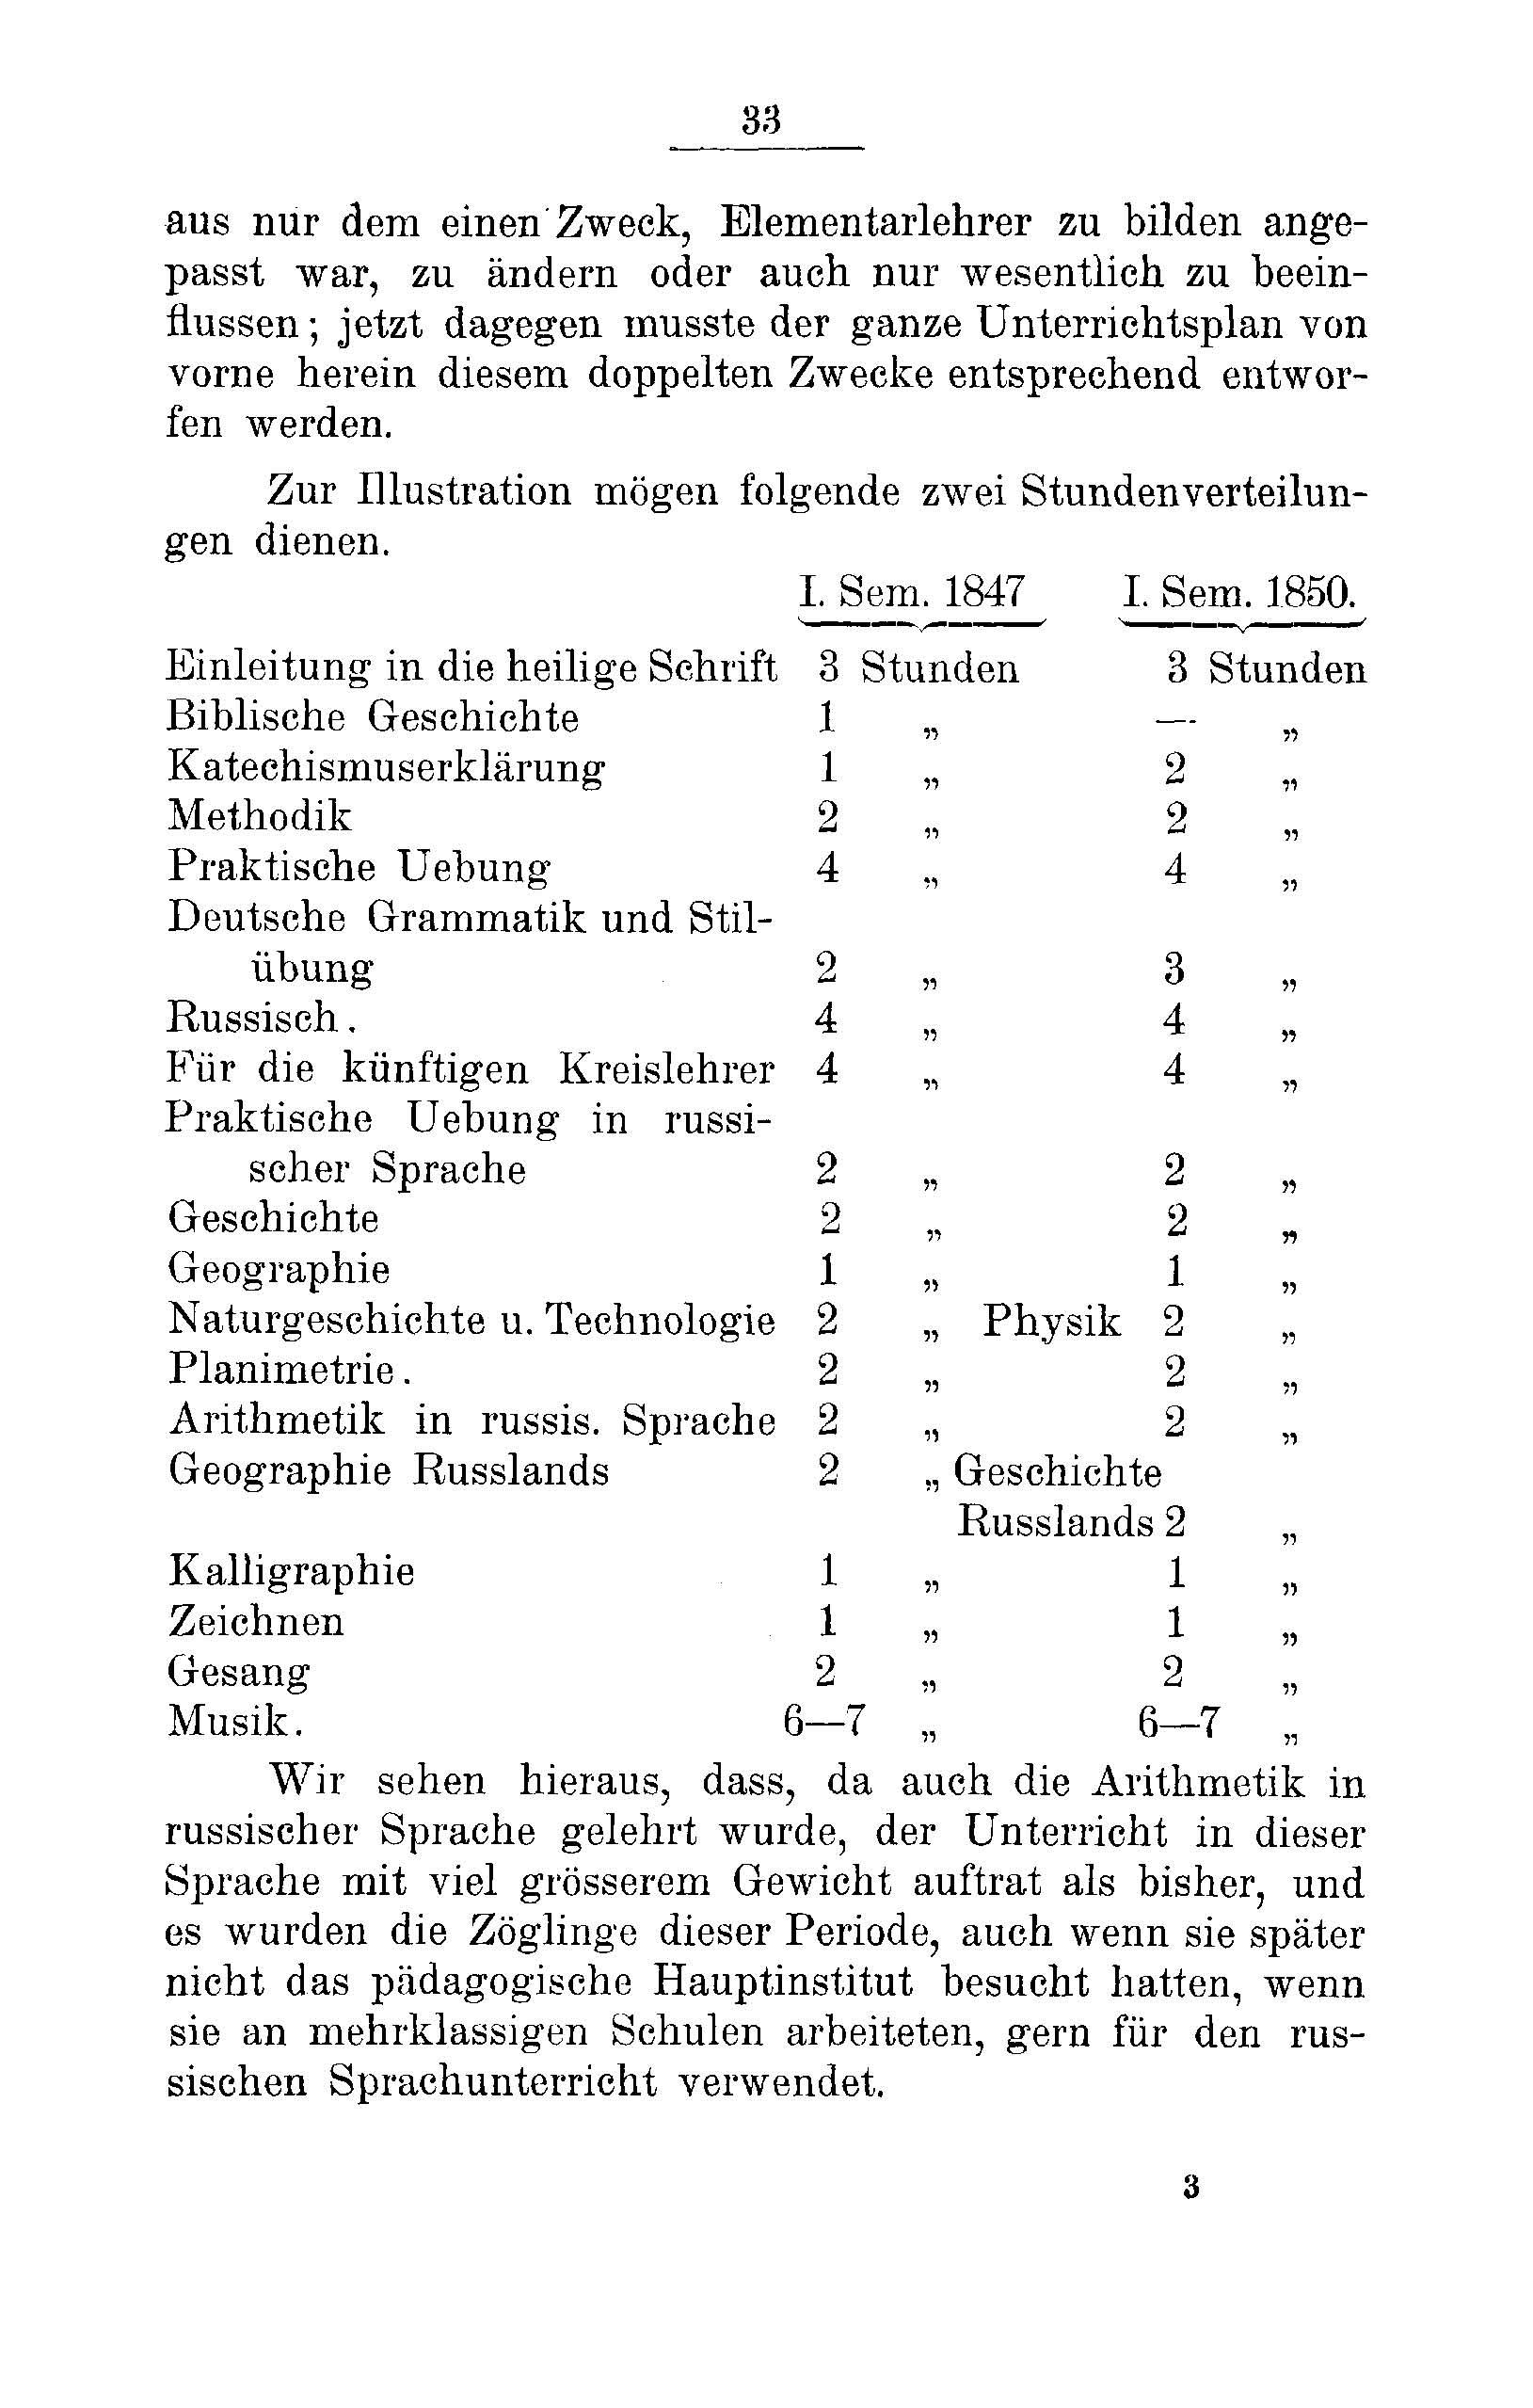 Das Erste Dorpatsche Lehrer-Seminar (1890) | 35. Haupttext